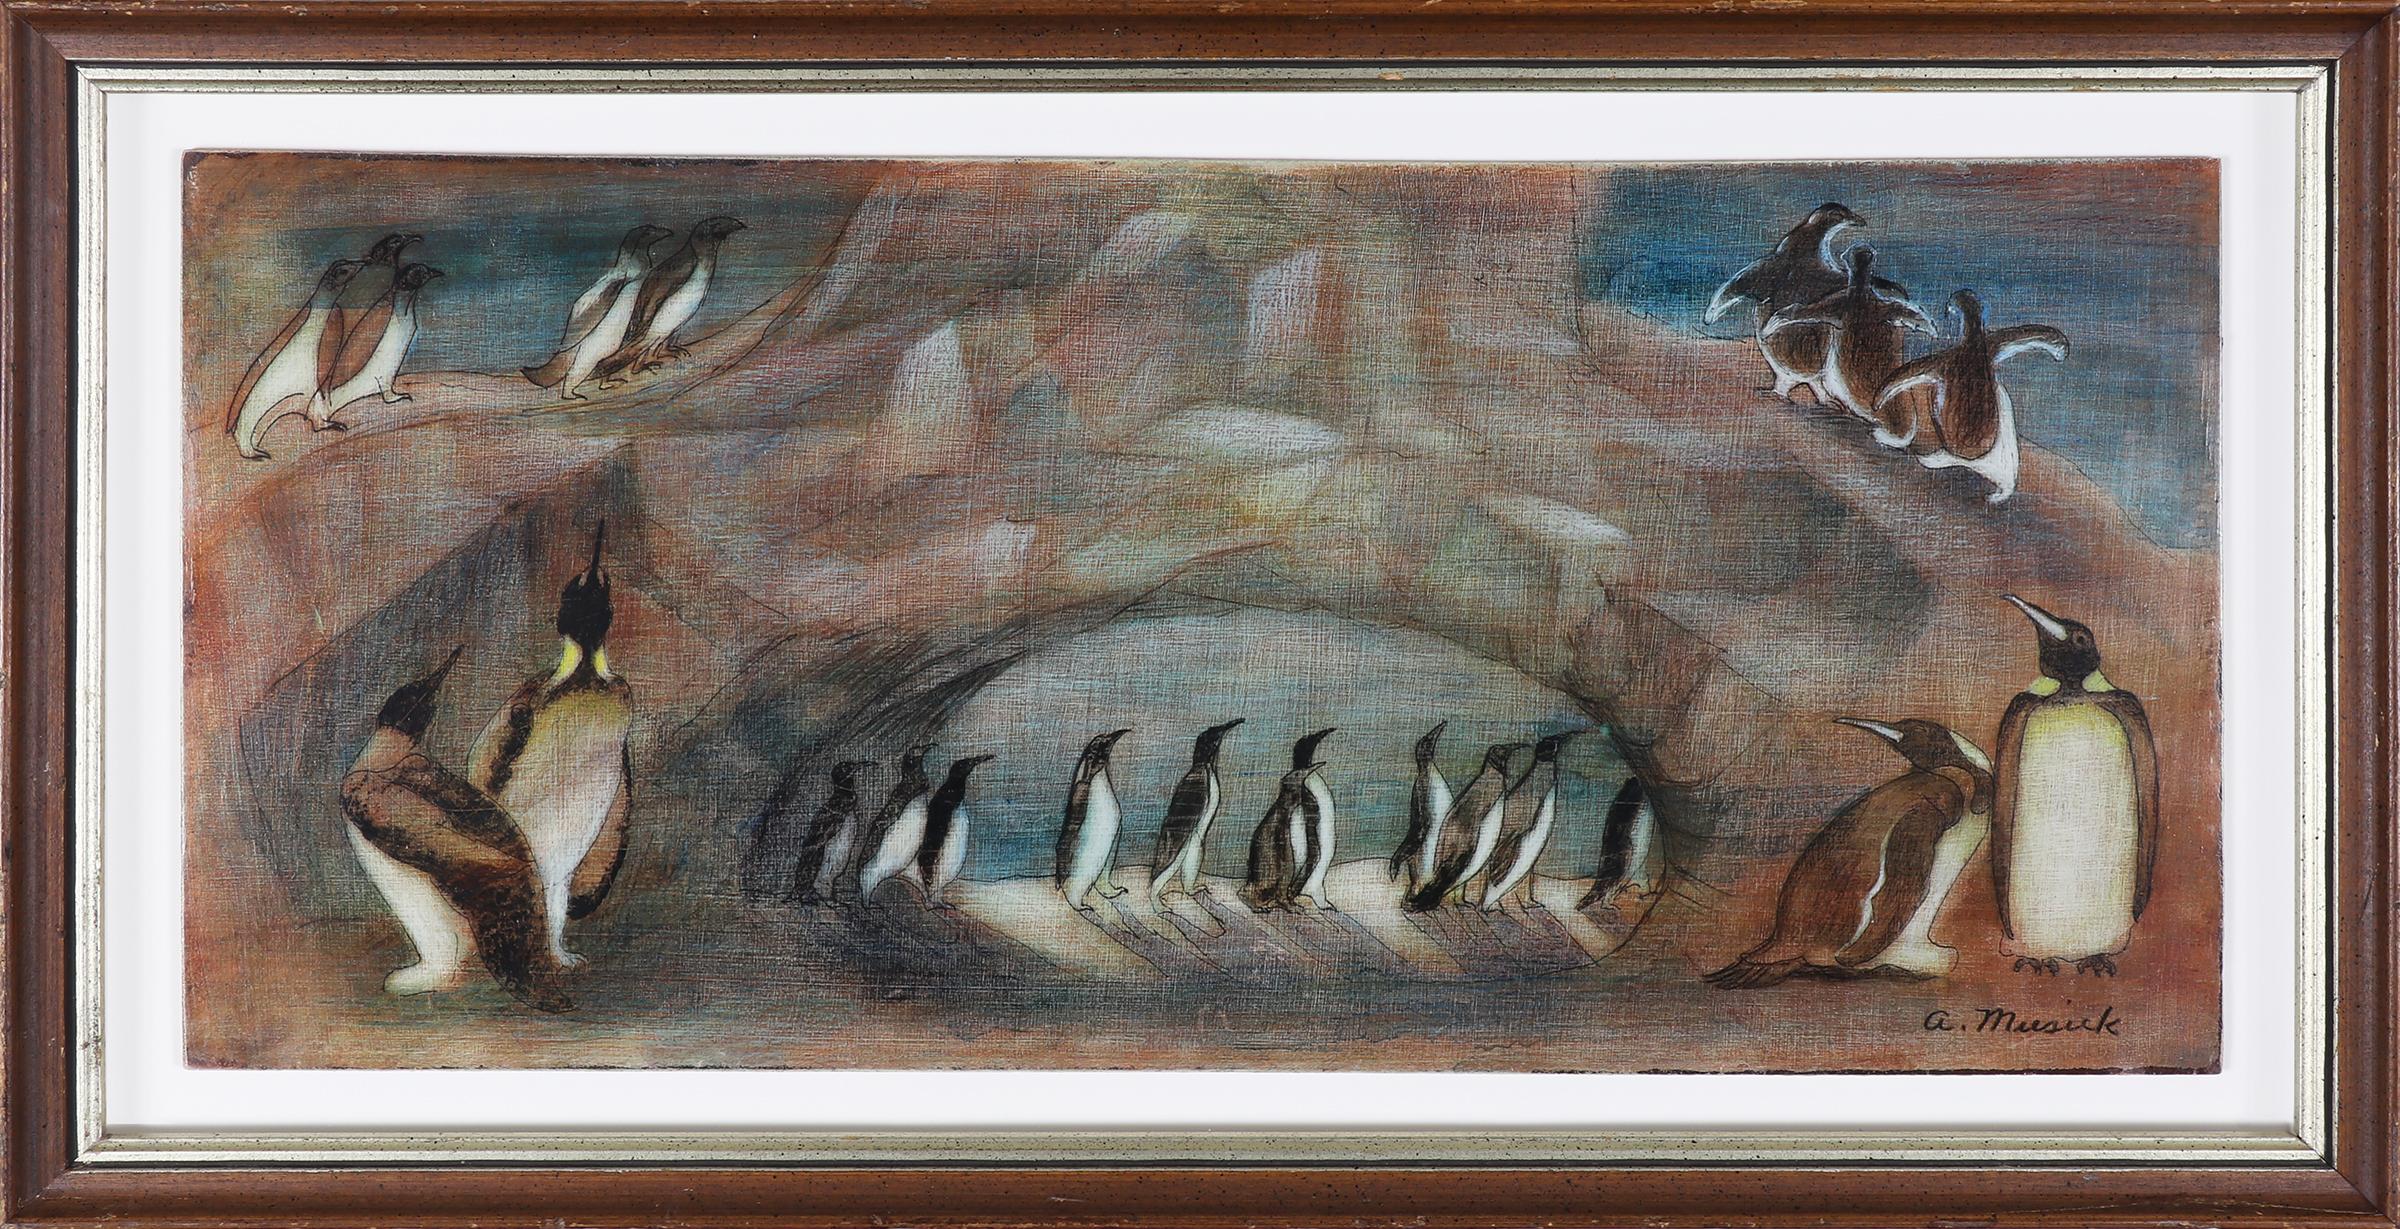 Animal Painting Archie Musick - Peinture Tempera moderniste américaine, Pingouins dans un paysage enneigé, bleu et blanc